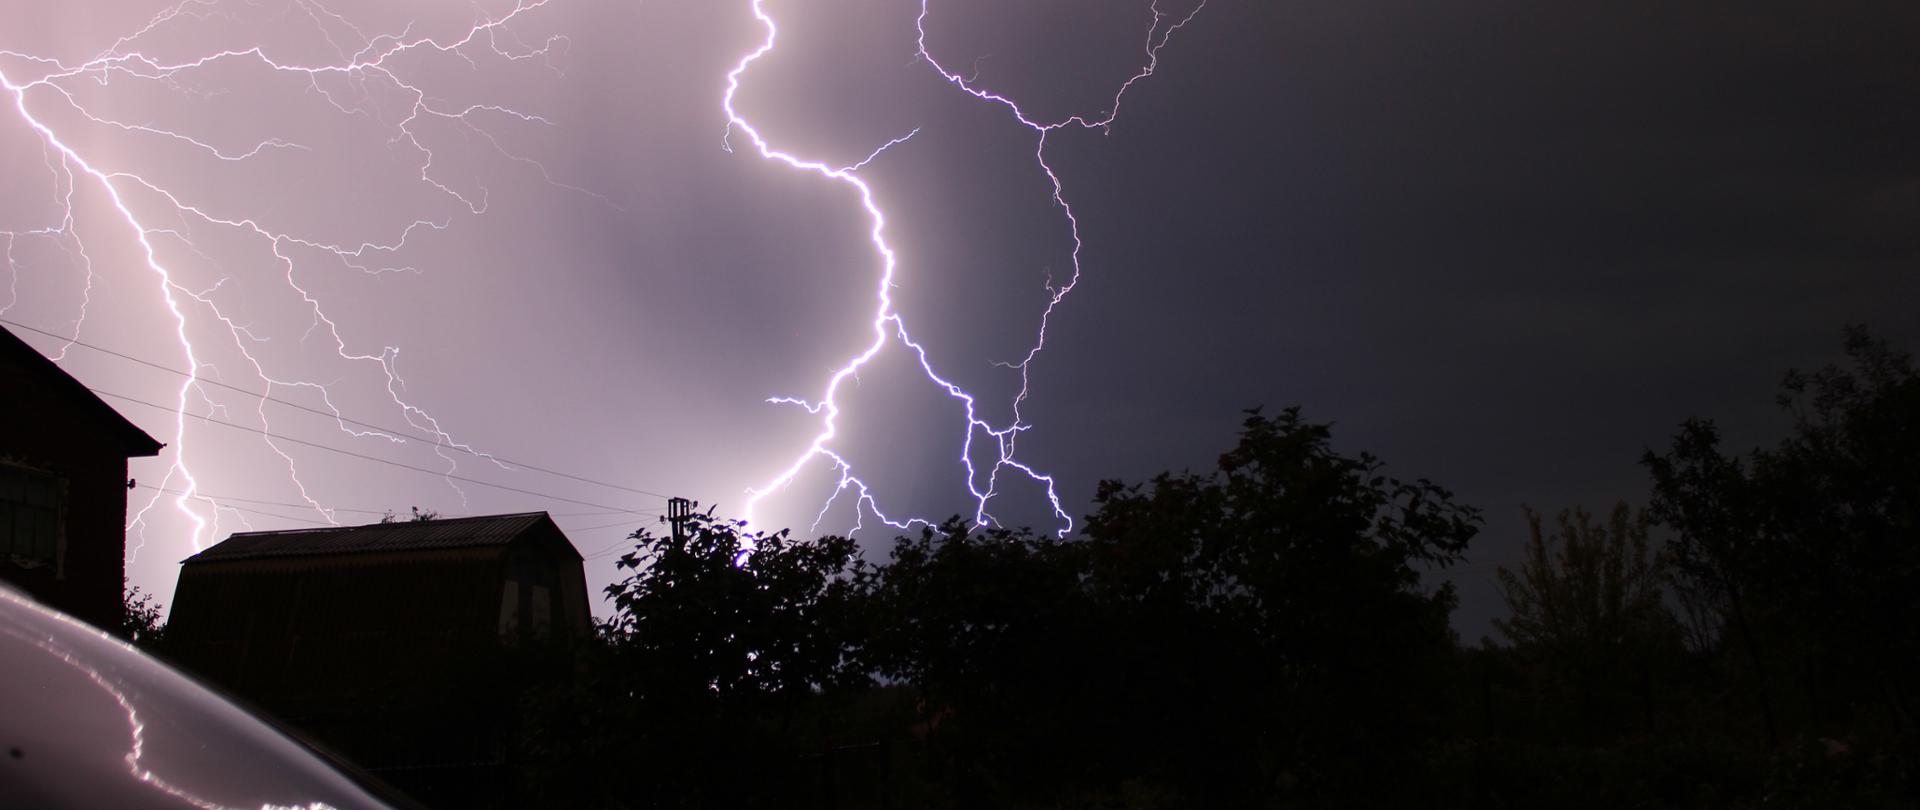 Zdjęcie przedstawia burzę nocą. Widoczna jest duża błyskawica nad domami i koronami drzew.